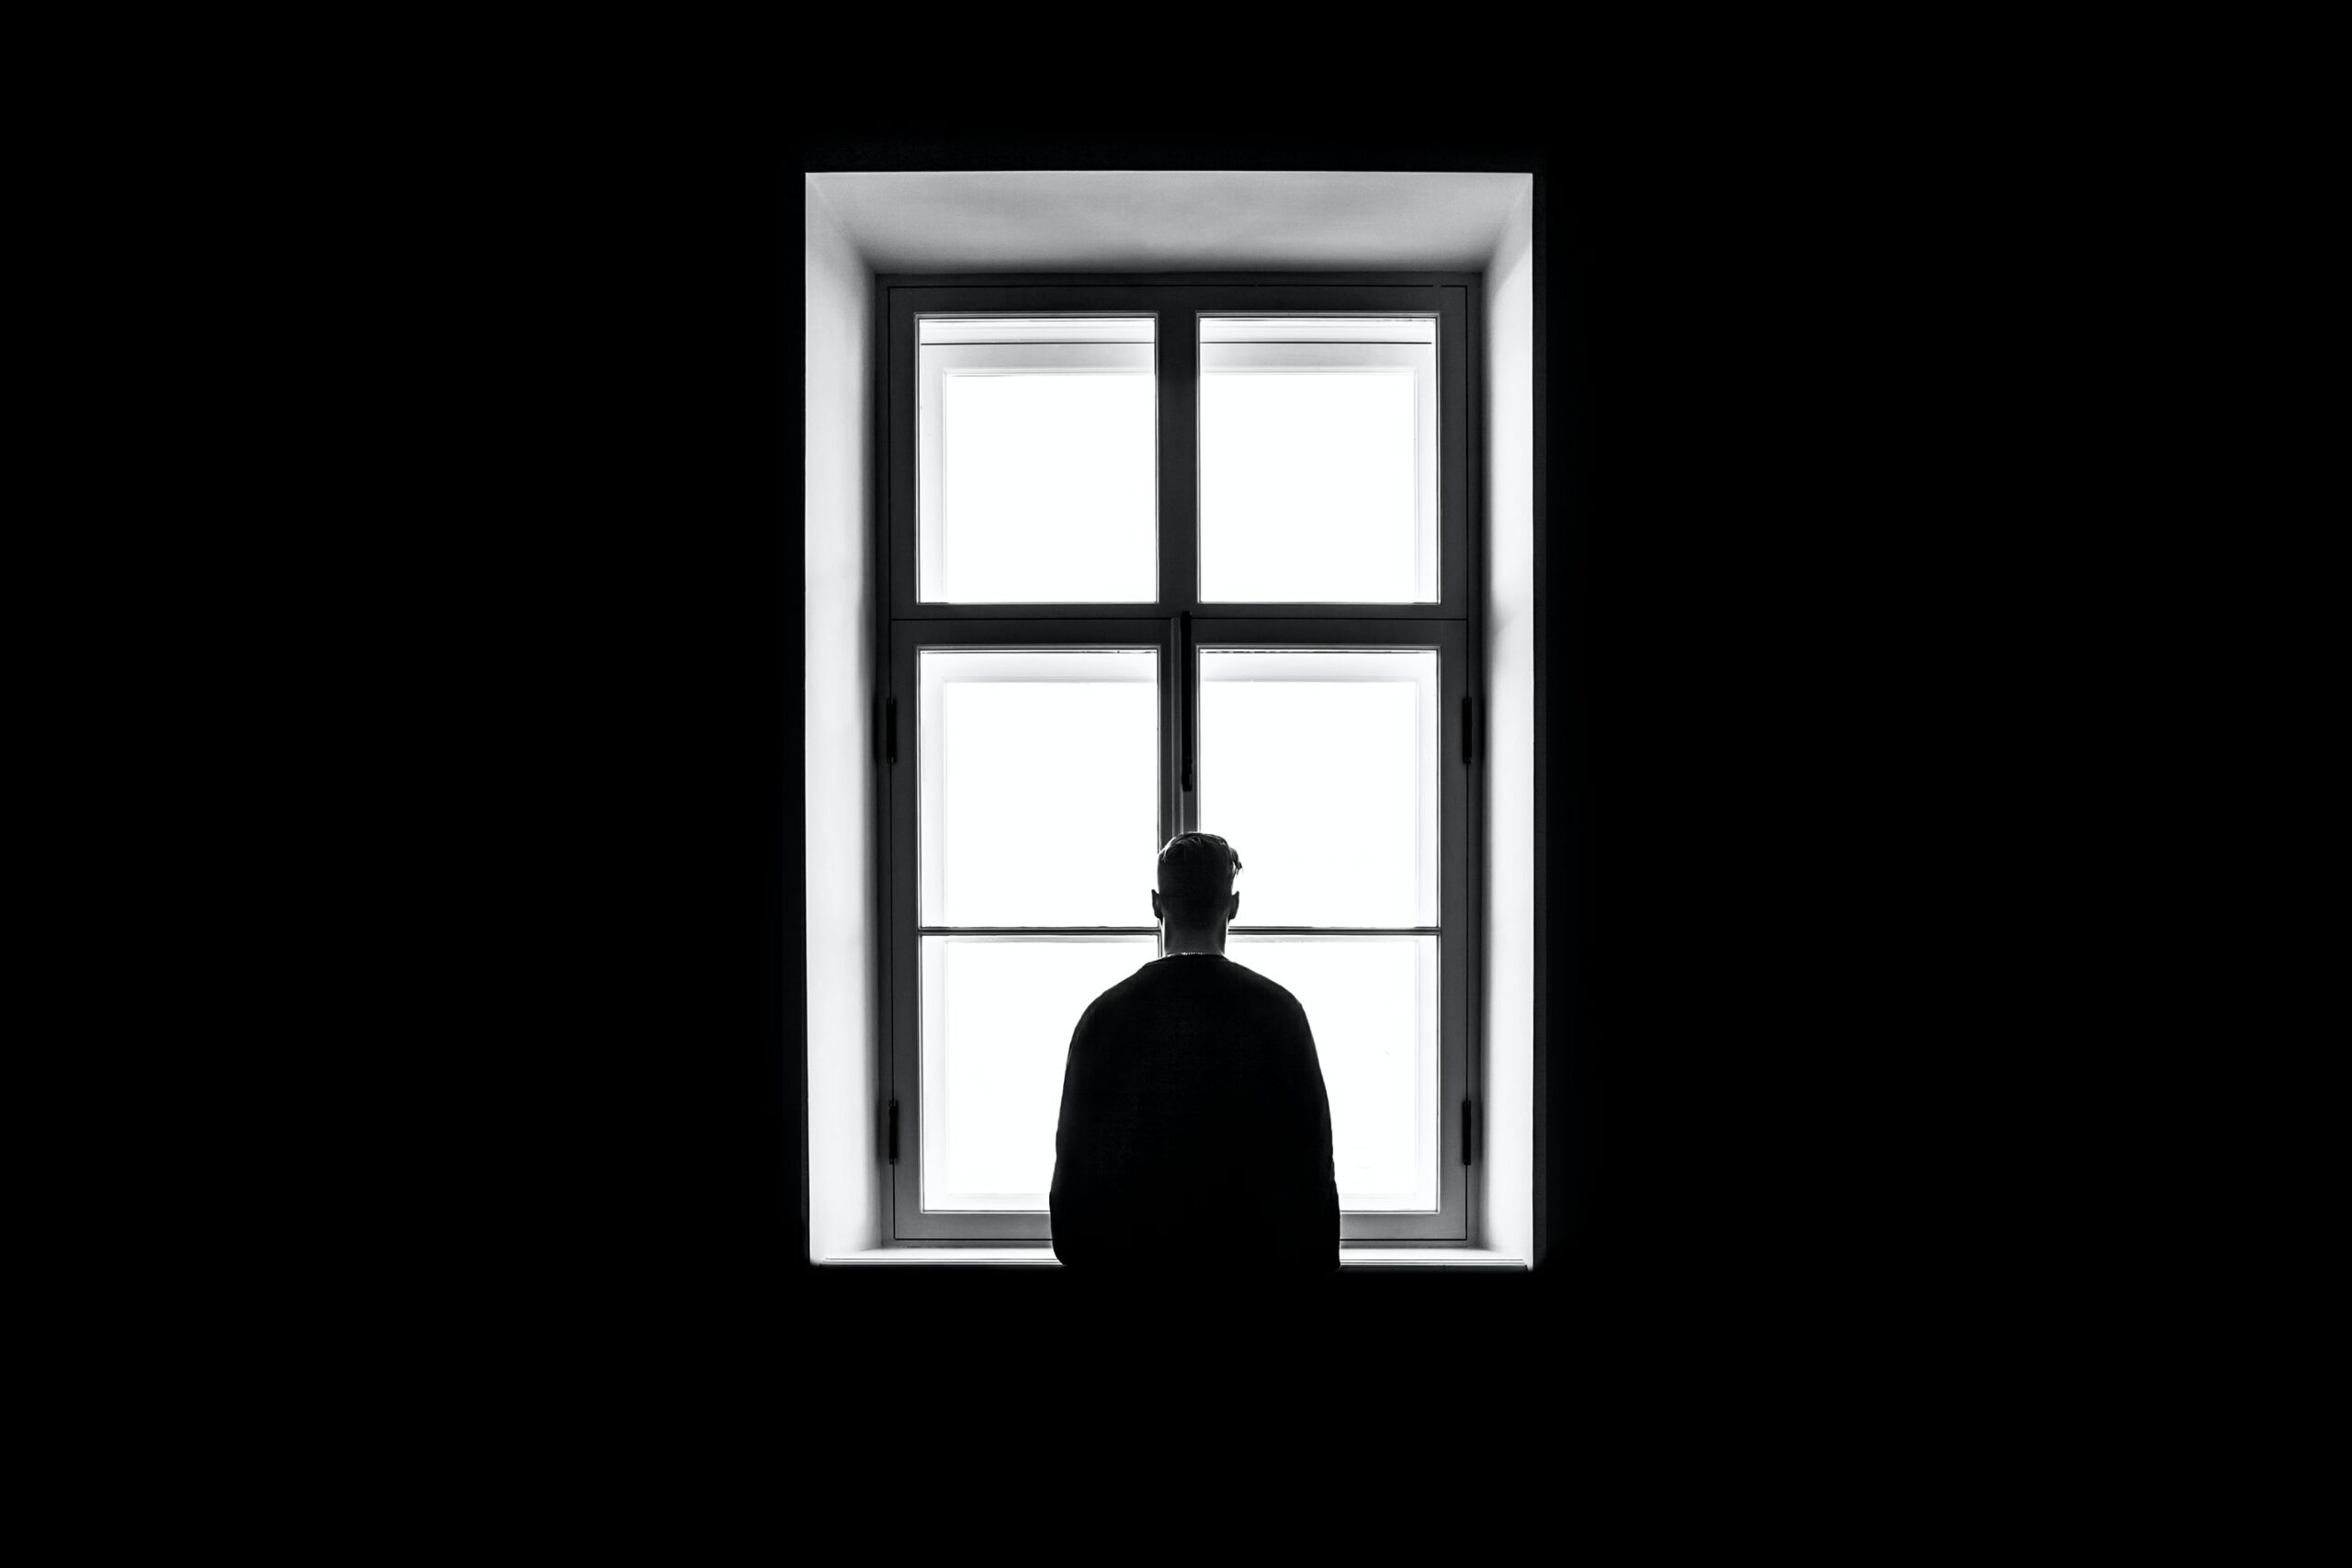 Un homme seul se trouvant dans une pièce très sombre, regarde par la fenêtre